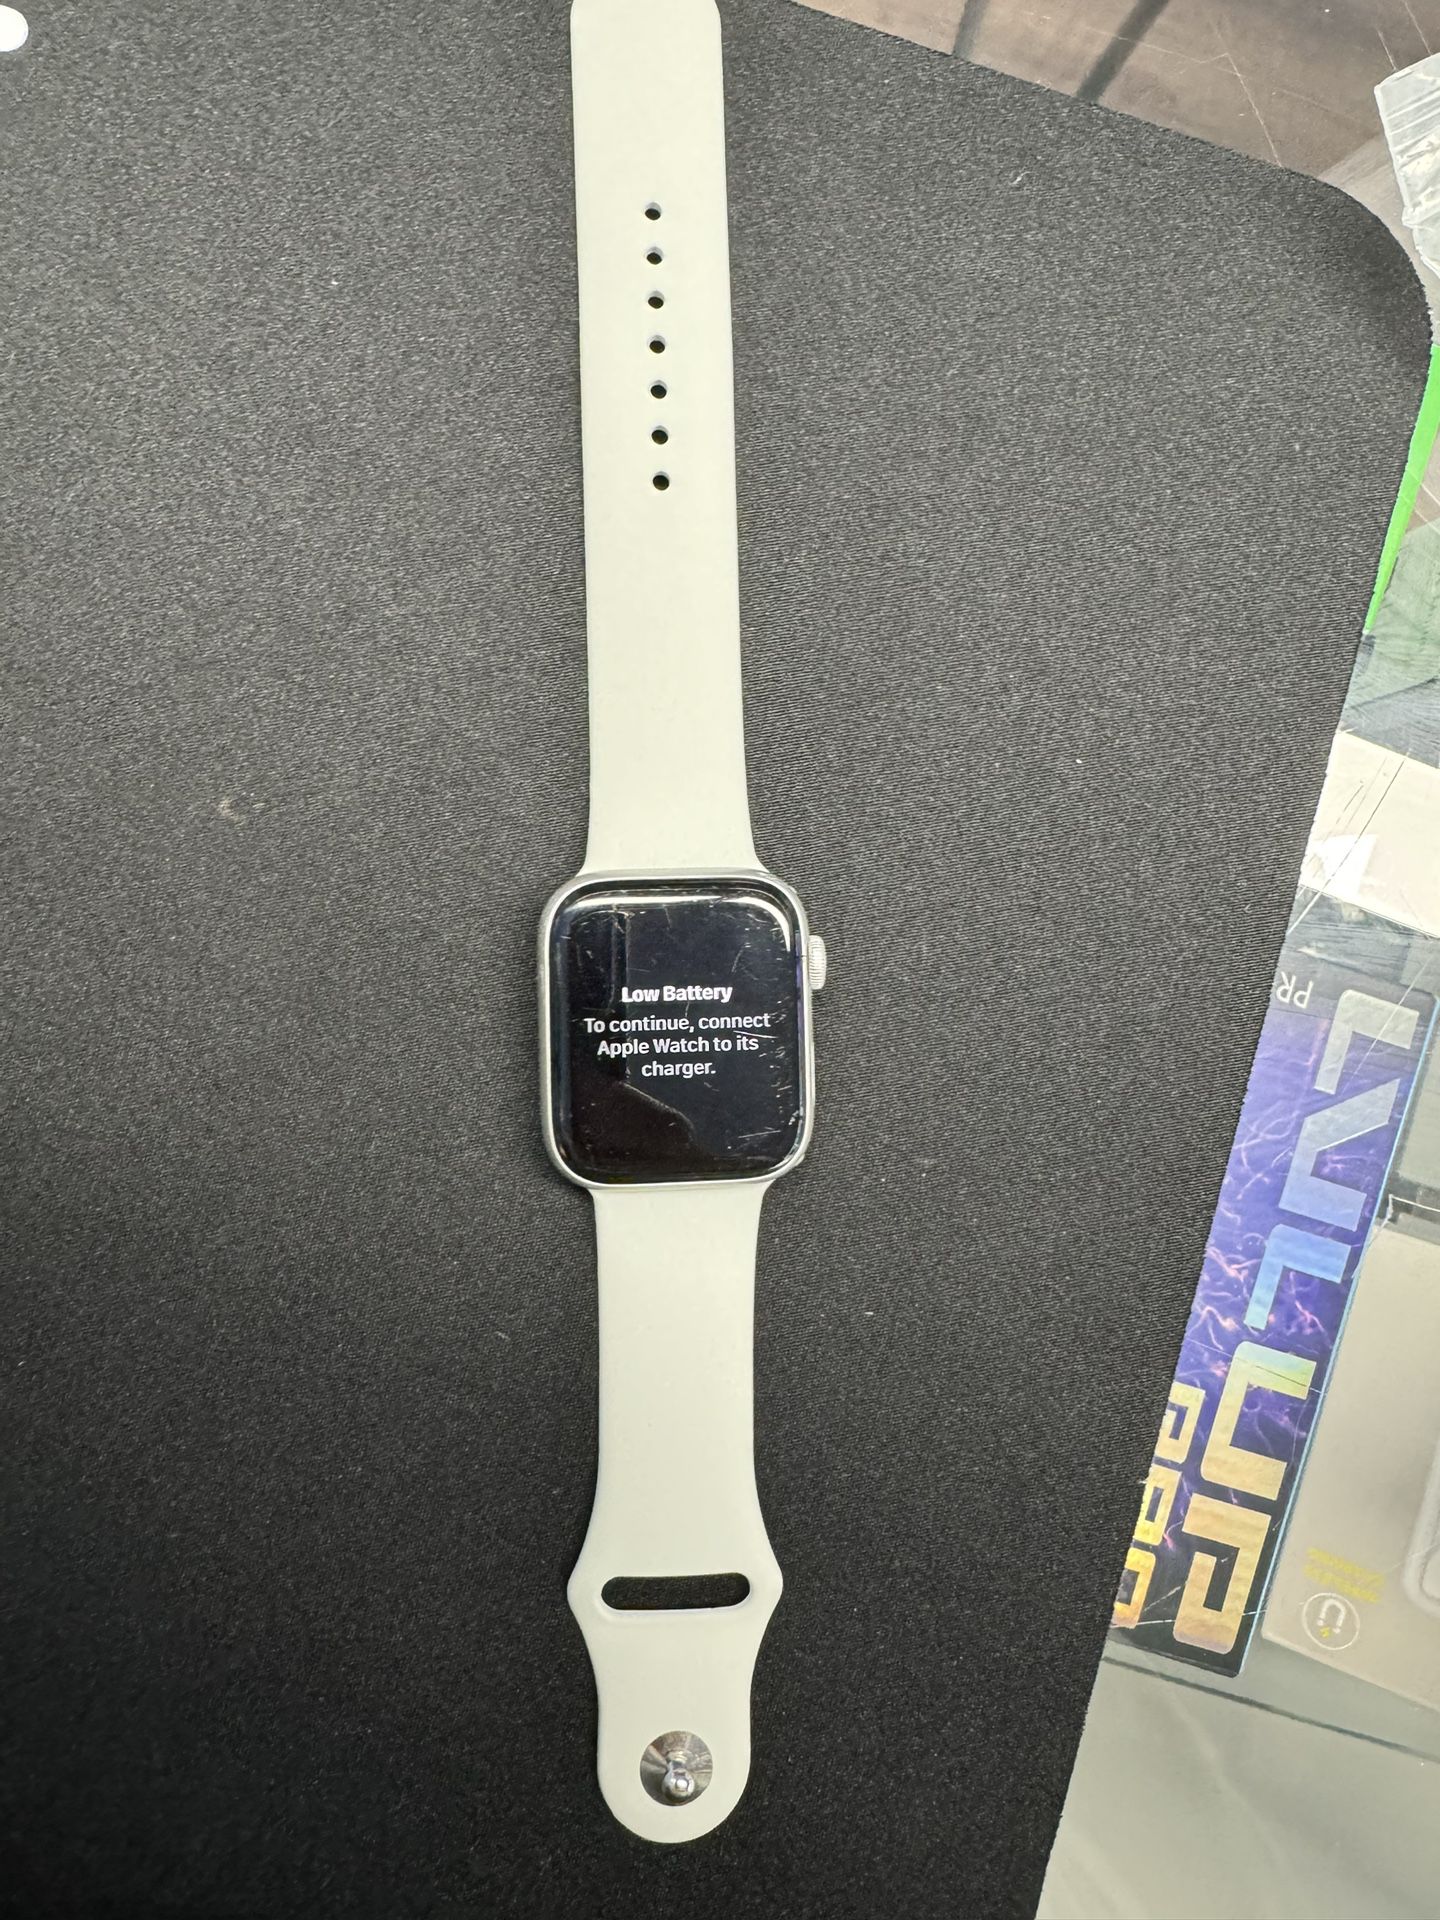 Apple Watch Series 4 Nike+ 44mm